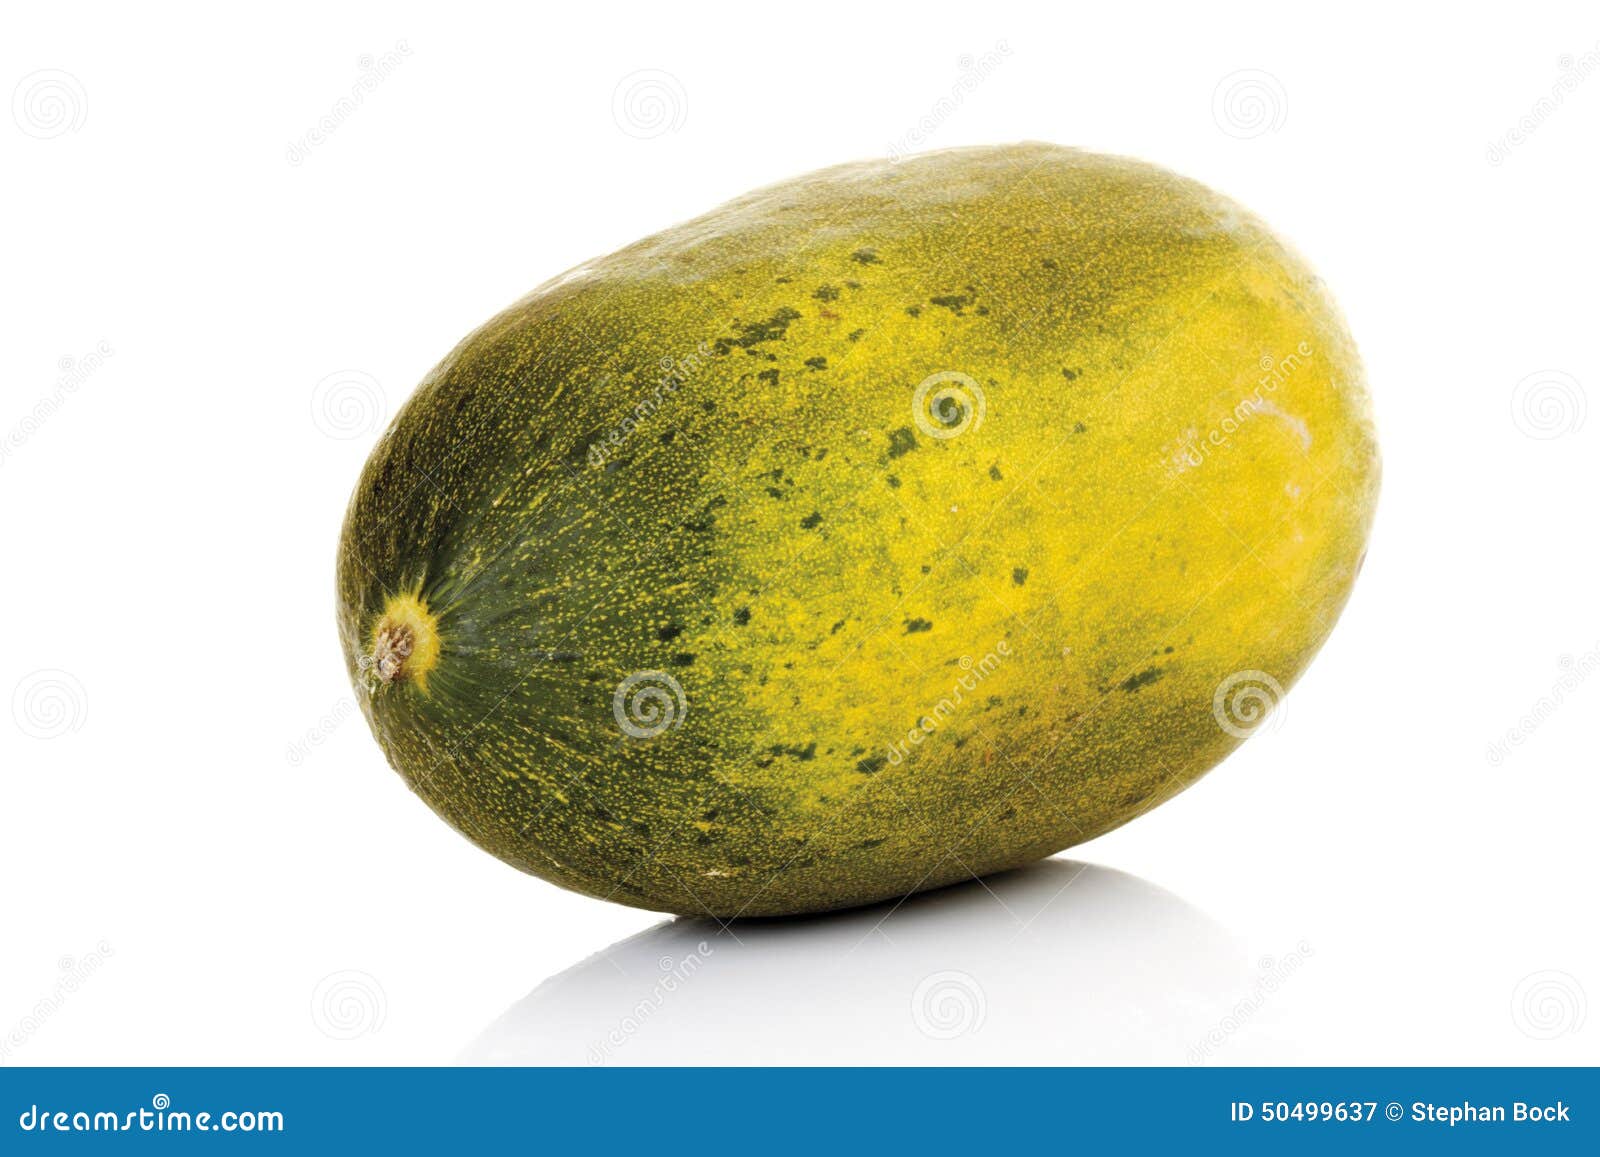 futuro melon, close-up